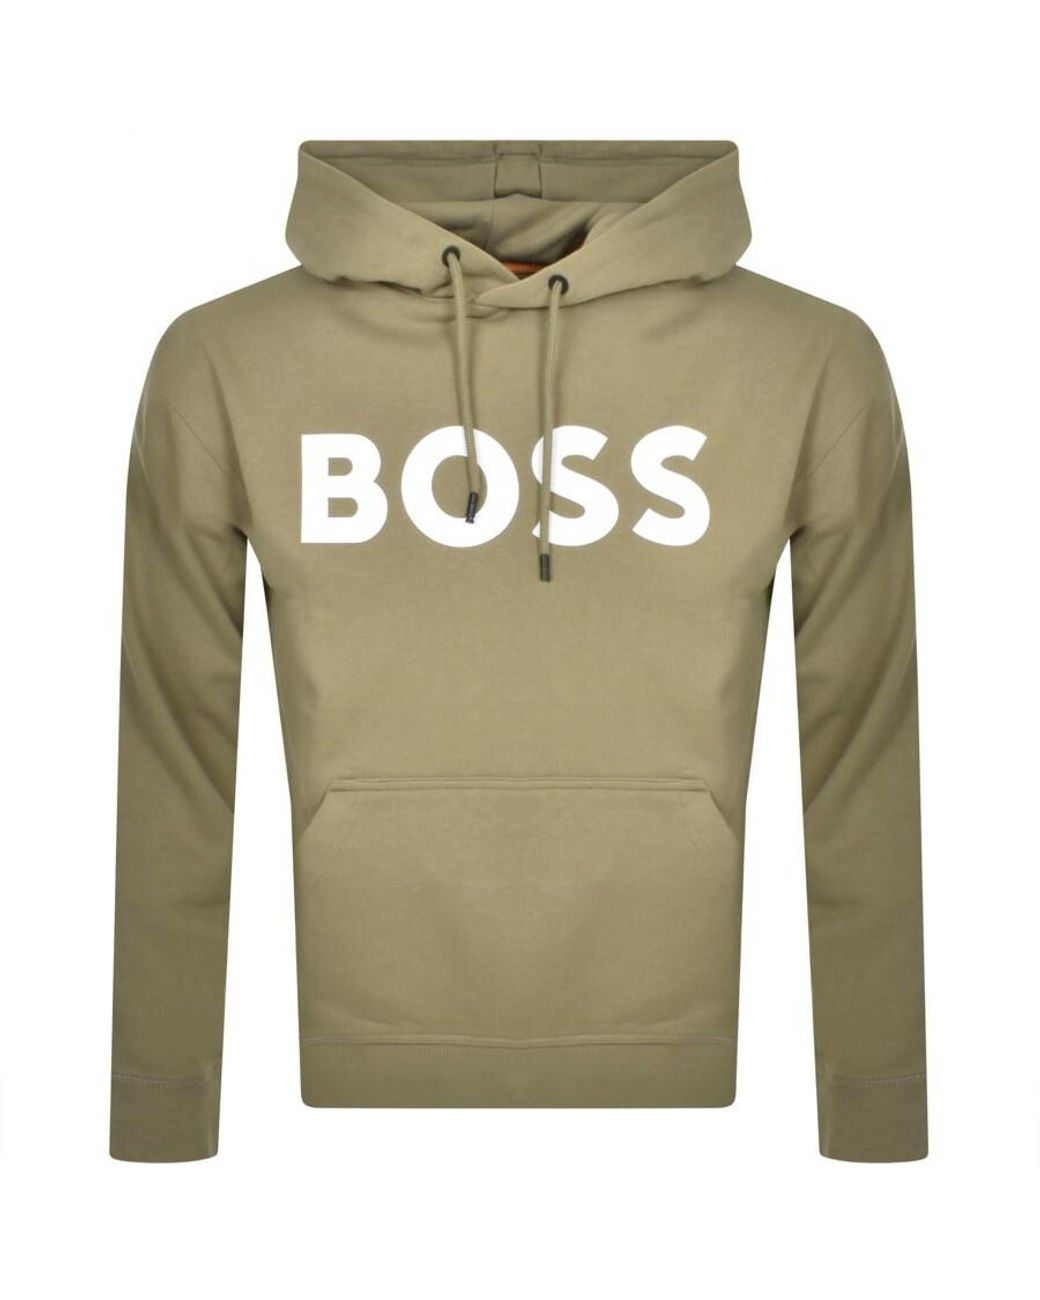 BOSS by HUGO BOSS Boss Basic Logo Hoodie in Green for Men | Lyst UK